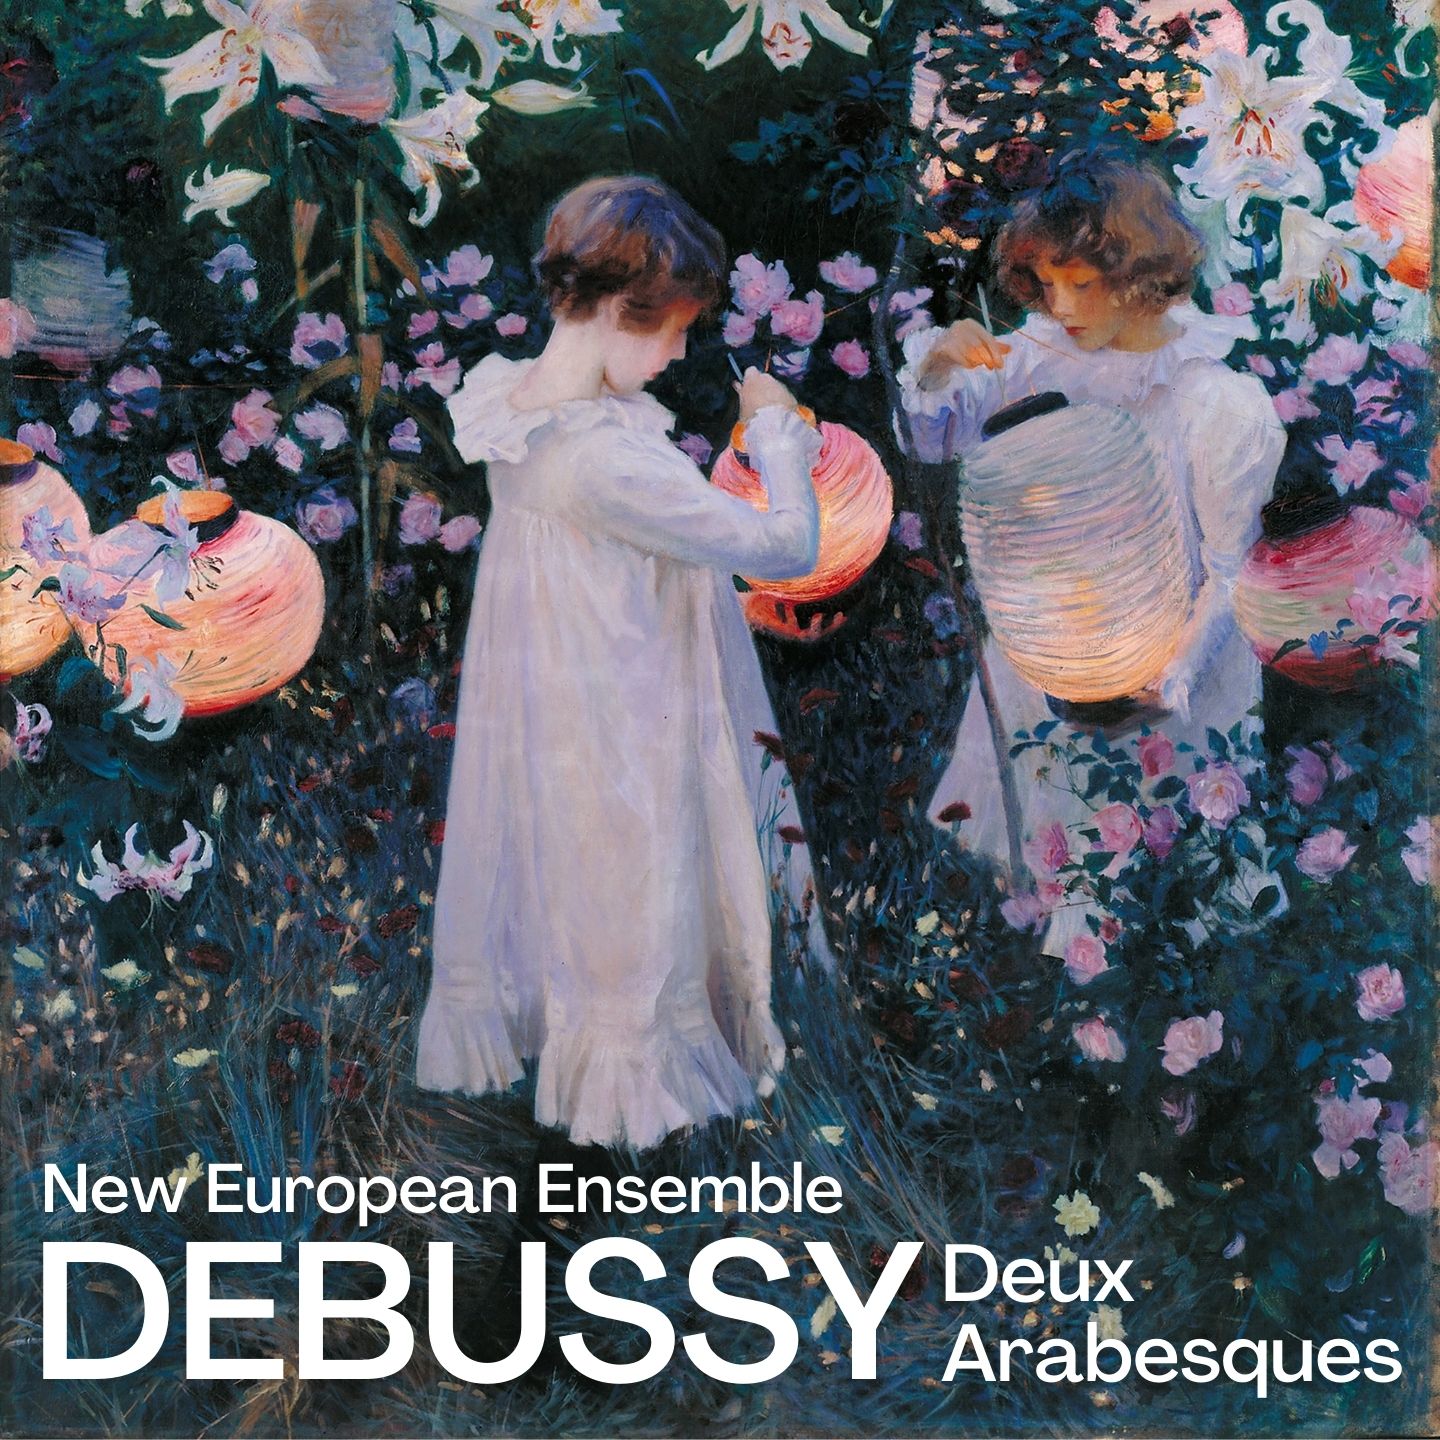 Debussy: Deux Arabesques